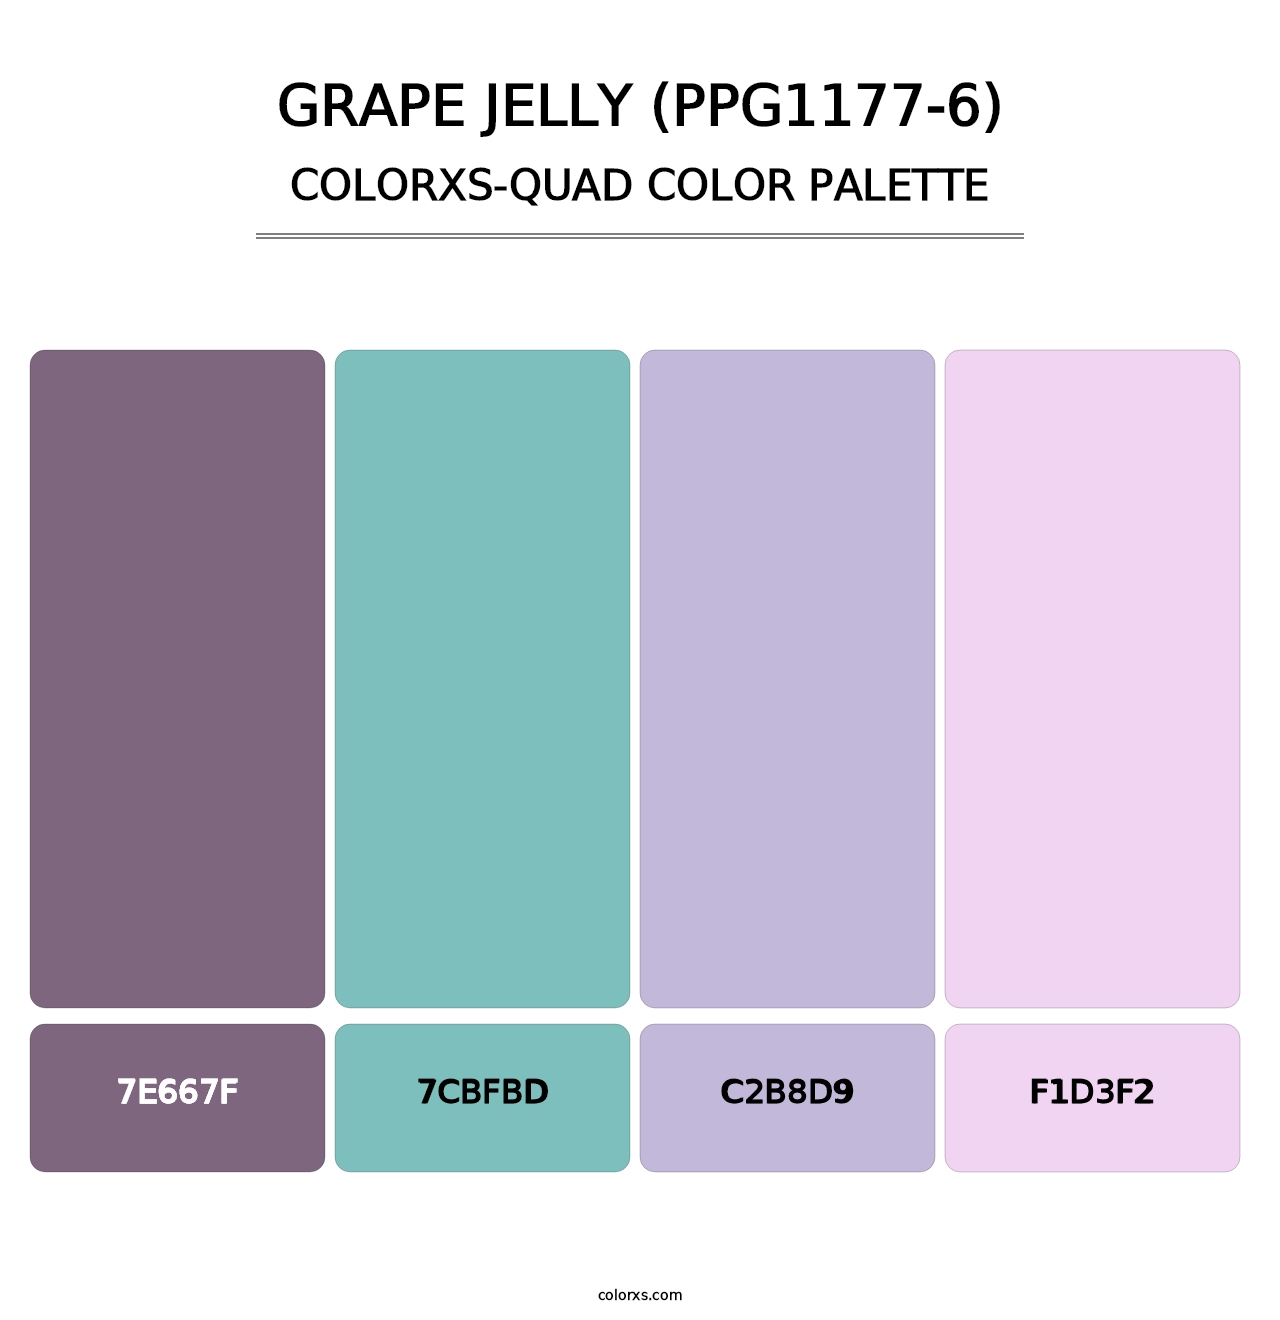 Grape Jelly (PPG1177-6) - Colorxs Quad Palette